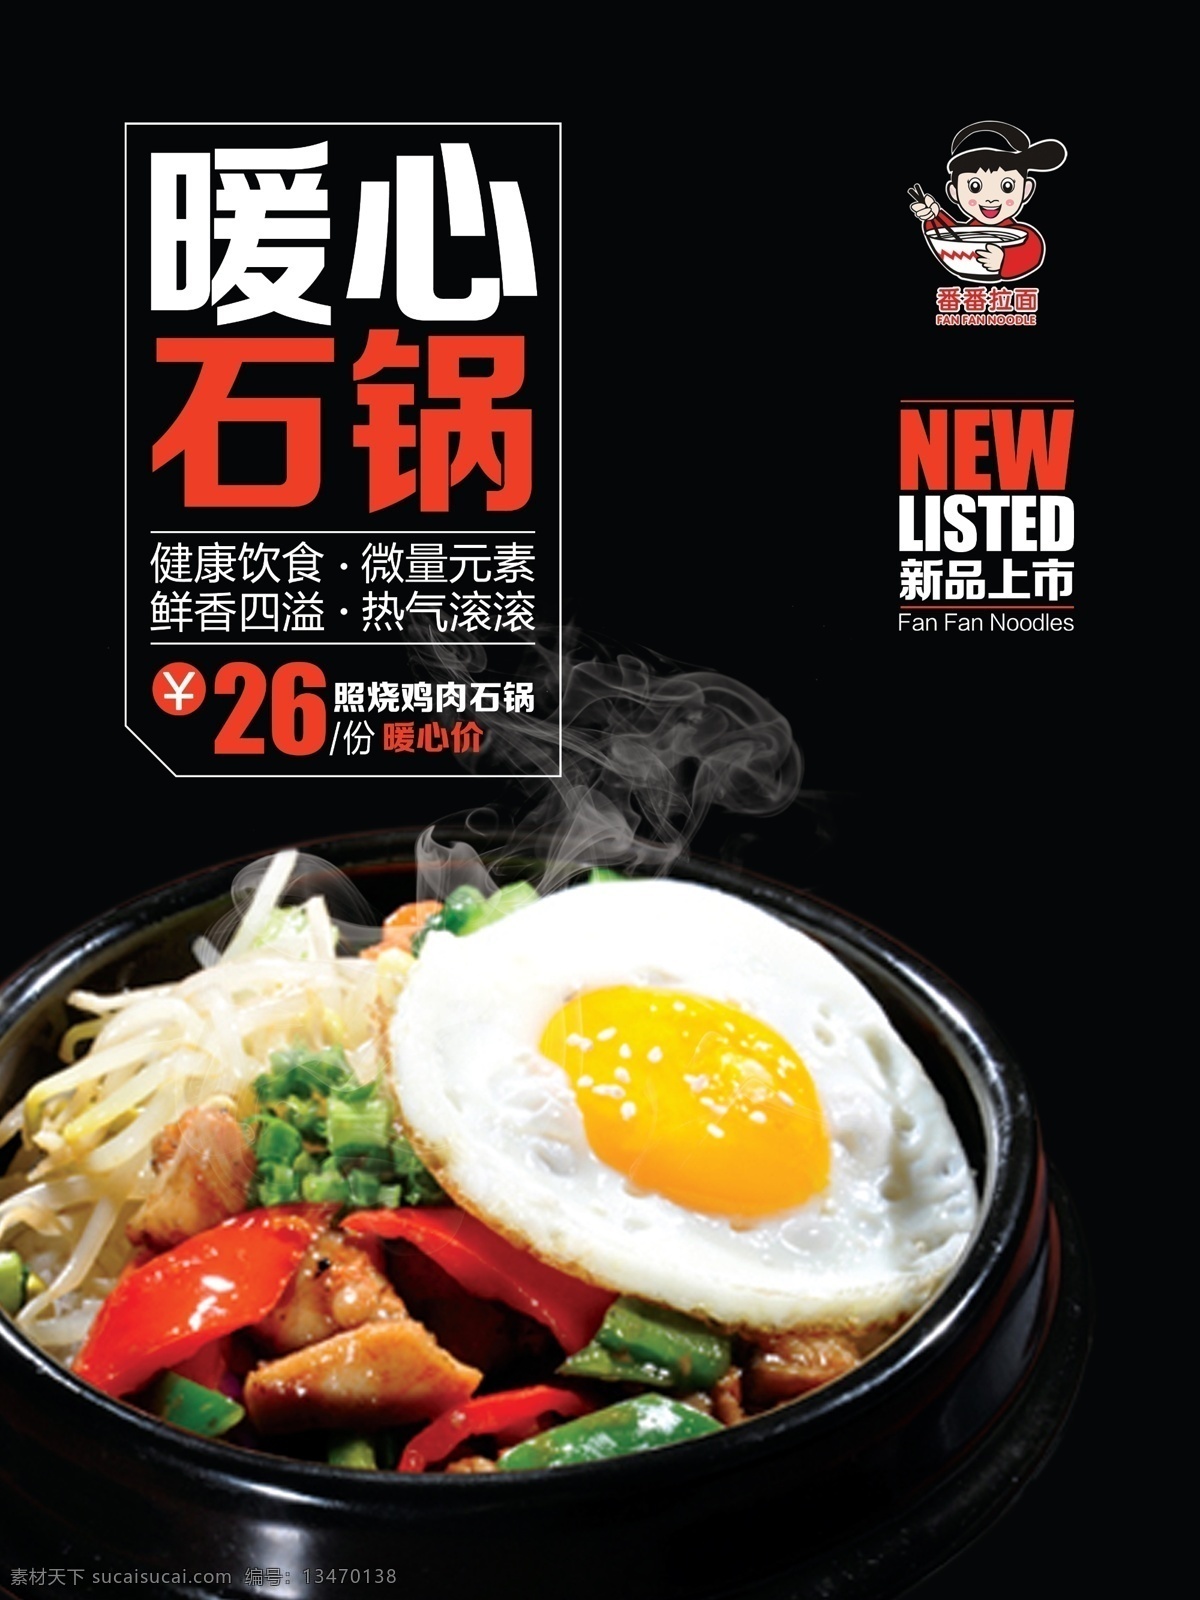 日本 风格 菜品 海报 2015 vi 餐饮设计 传统文化 节日素材 魔幻 日本风格 色彩